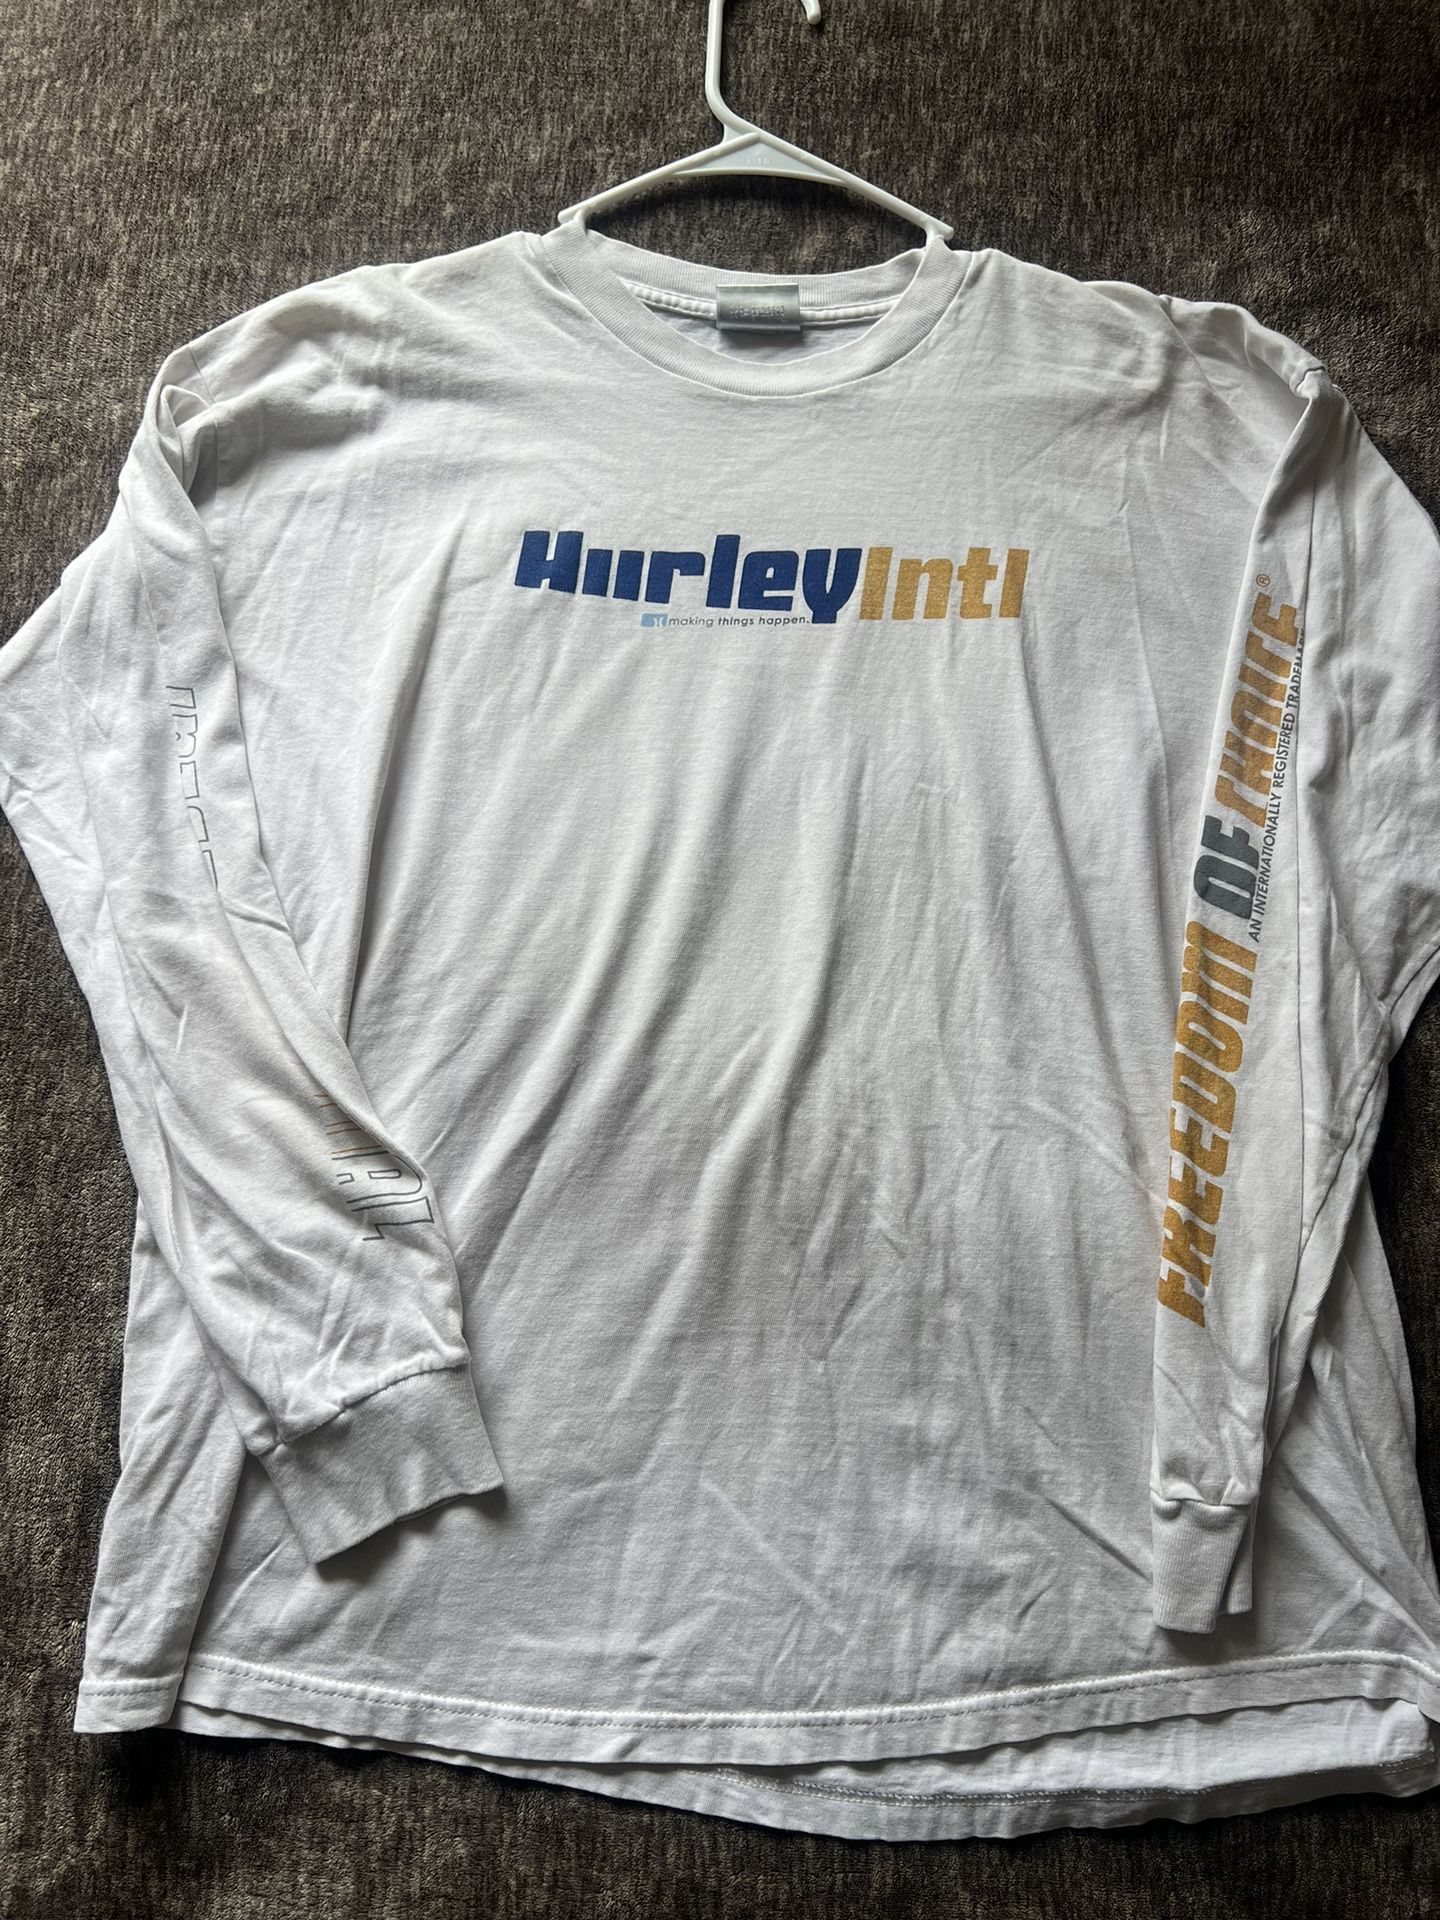 Hurley Surf Shirt